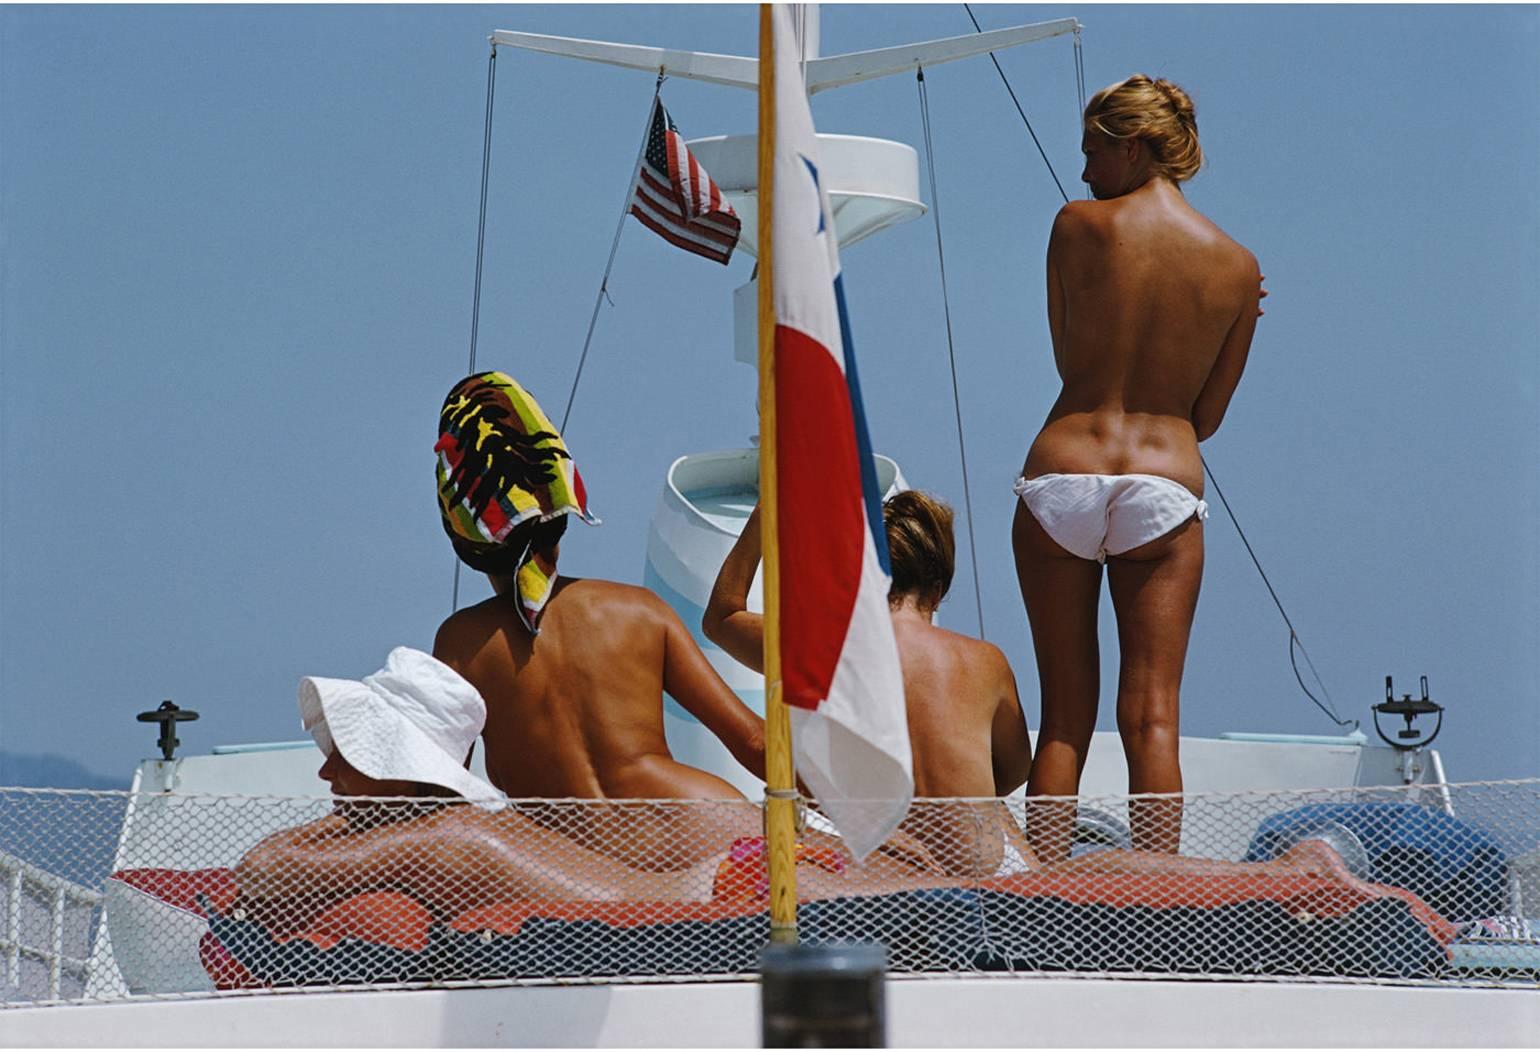 Corps bronzés sur le pont du yacht de Dino Pecci Blunt à Marbella, Espagne, 1967.

Un groupe de jeunes femmes bronzées capturées de dos est vu en train de profiter du chaud soleil espagnol à bord d'un yacht dans le glamour port espagnol. 

Slim